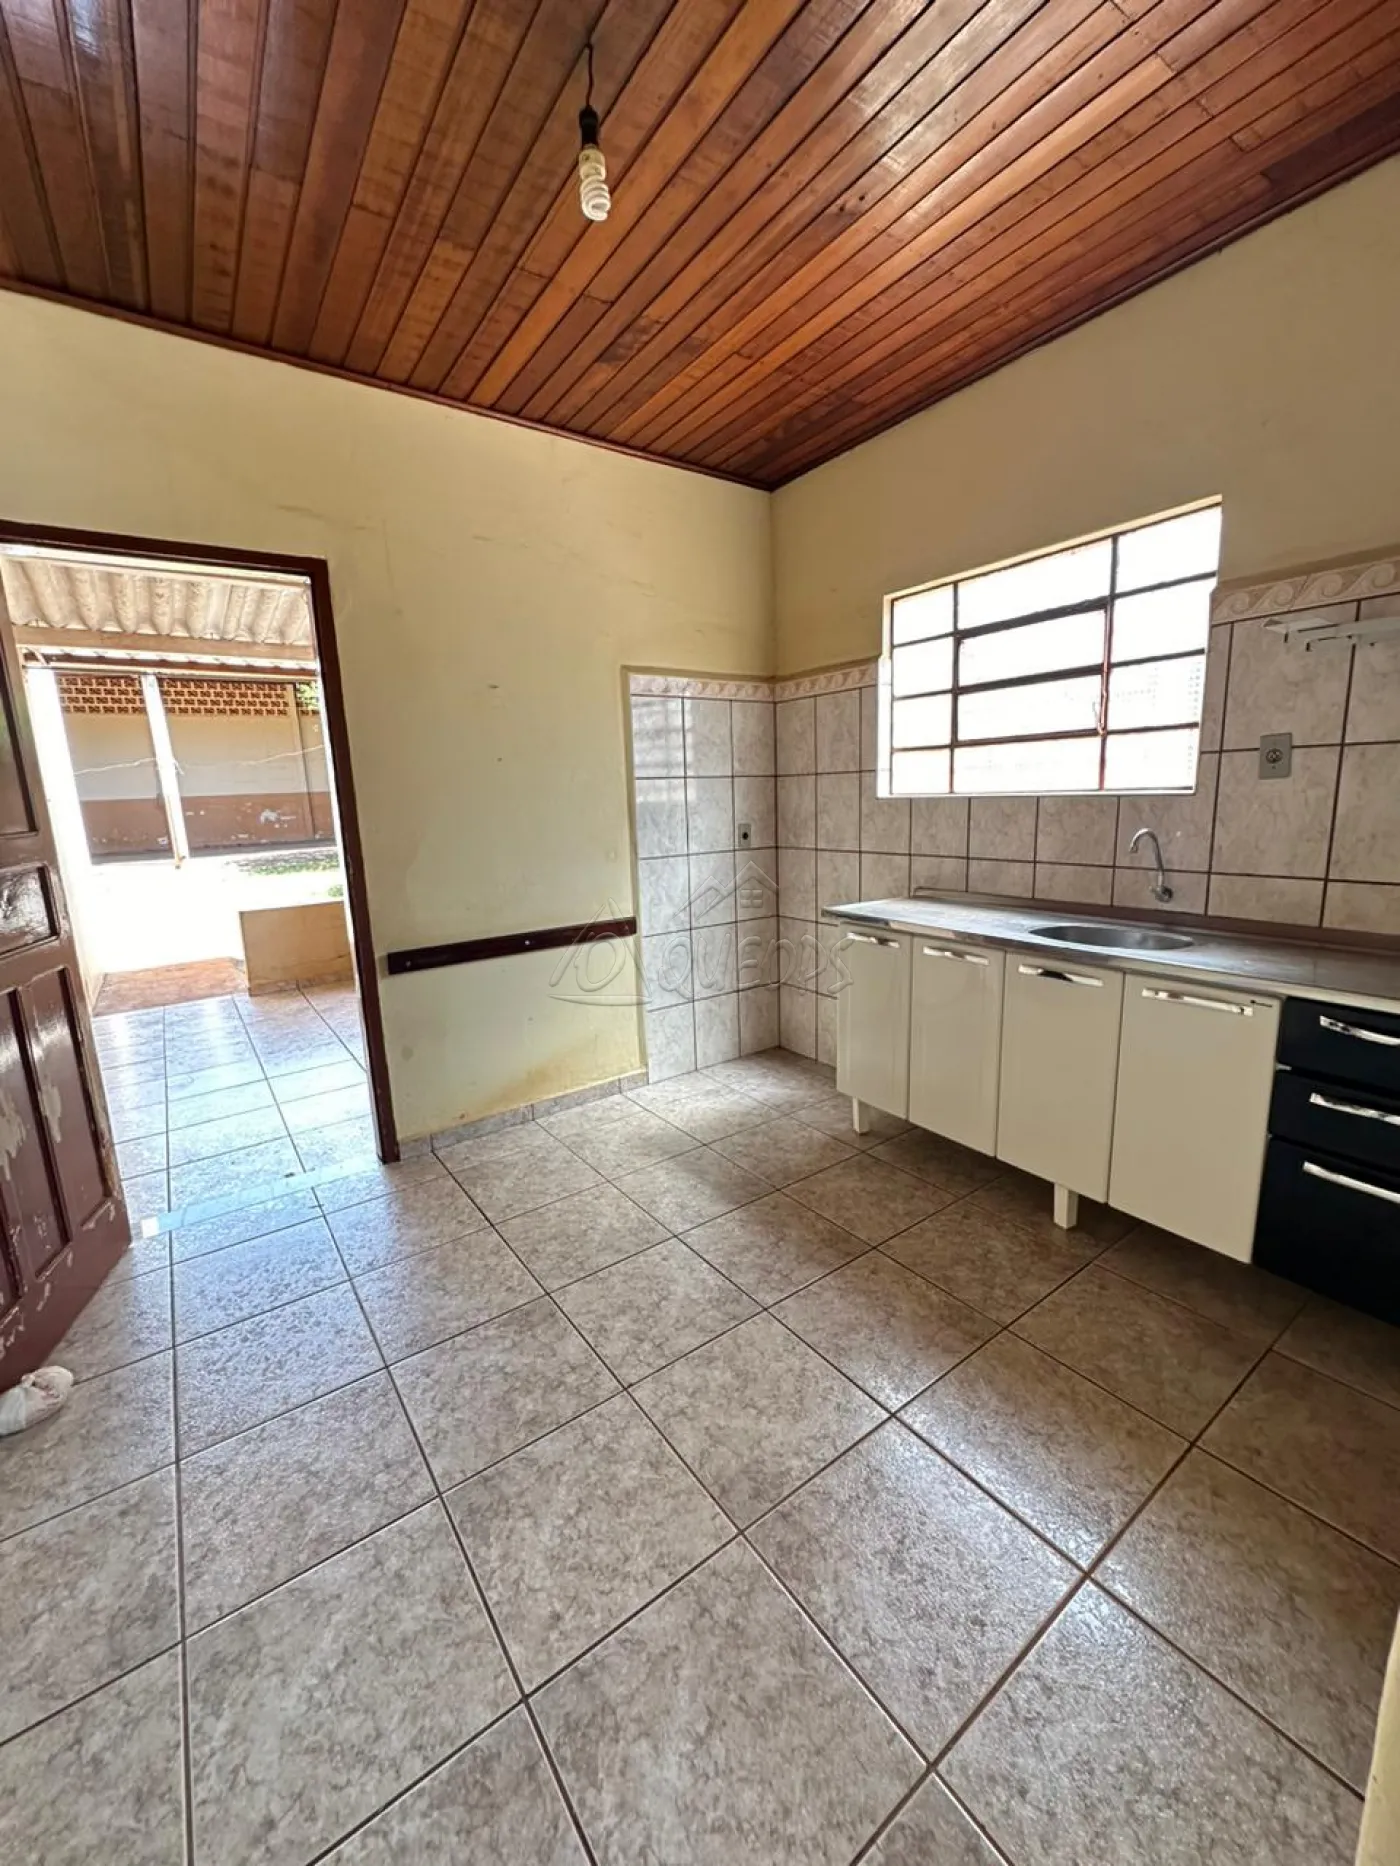 Comprar Casa / Padrão em Barretos R$ 250.000,00 - Foto 7